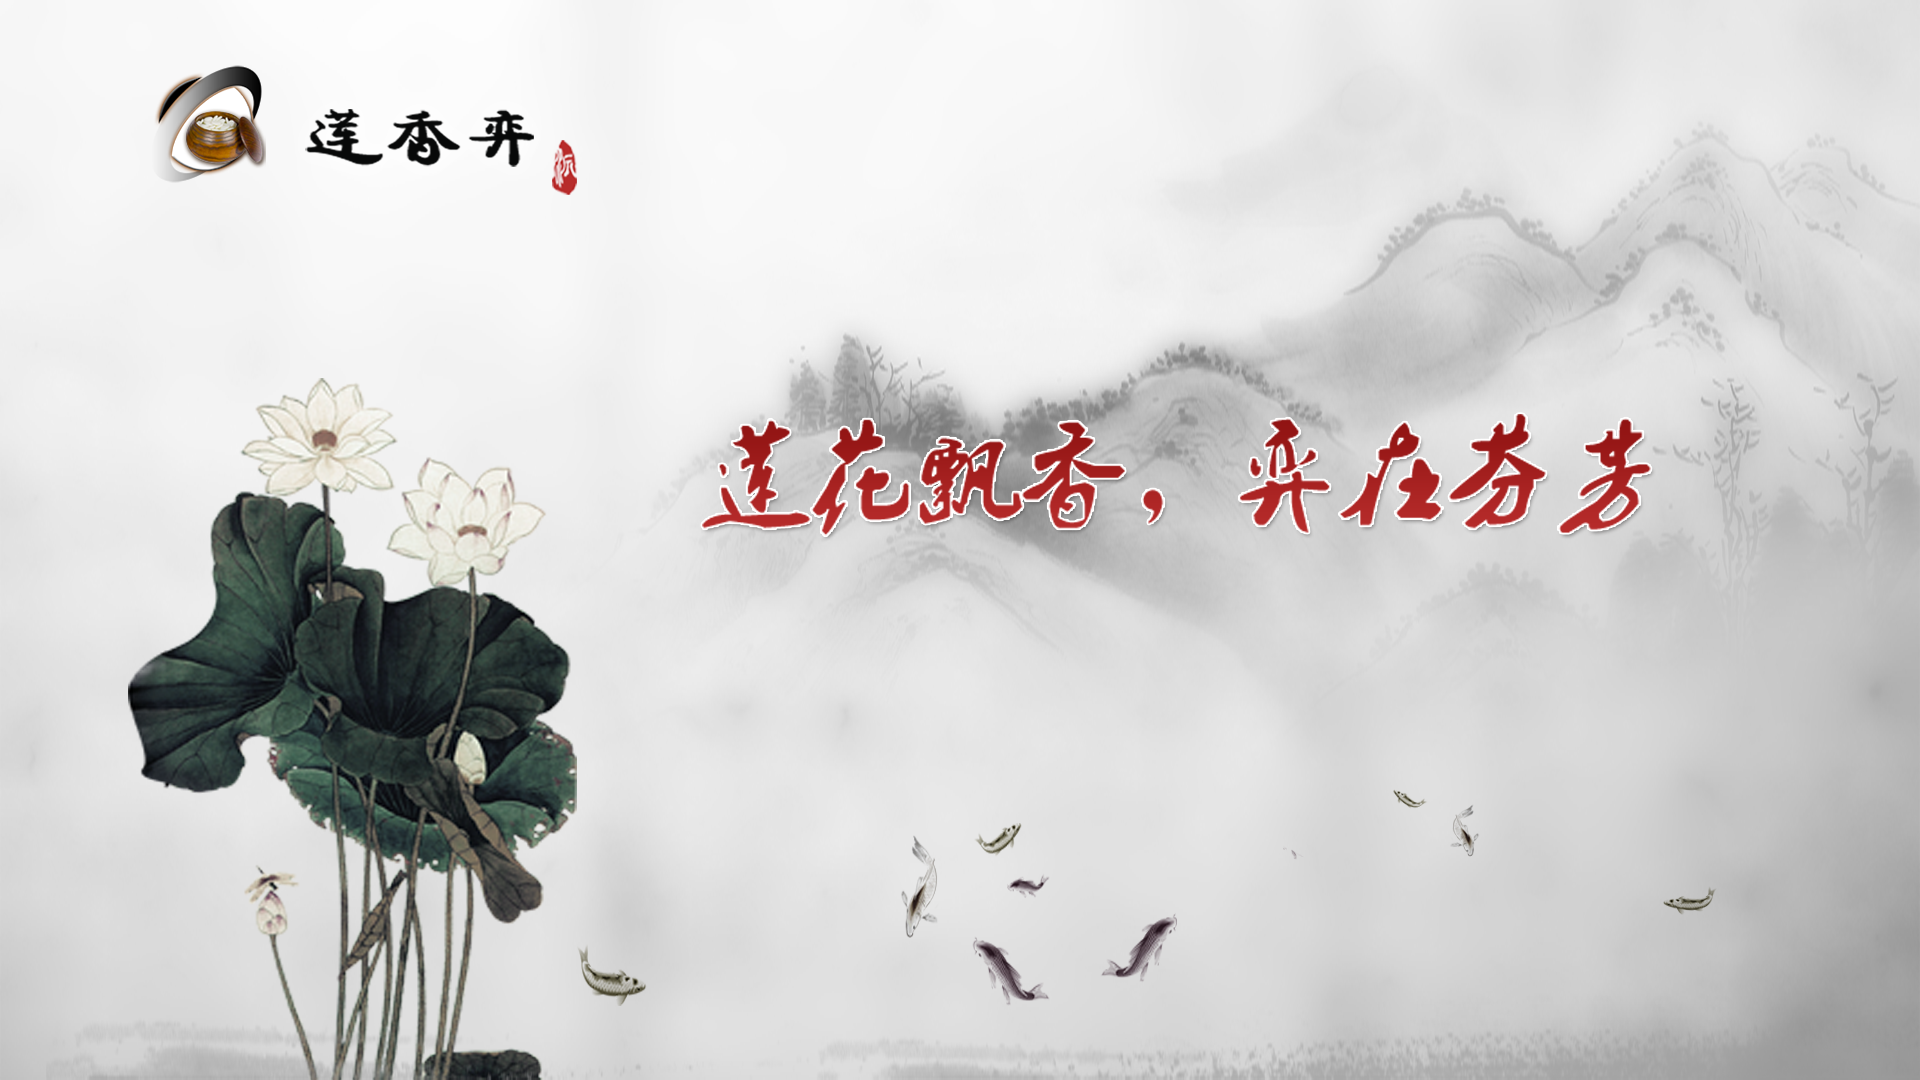 Banner of Lian Xiang က Go ကို သရုပ်ဆောင်ထားပါတယ်။ 8.20.26